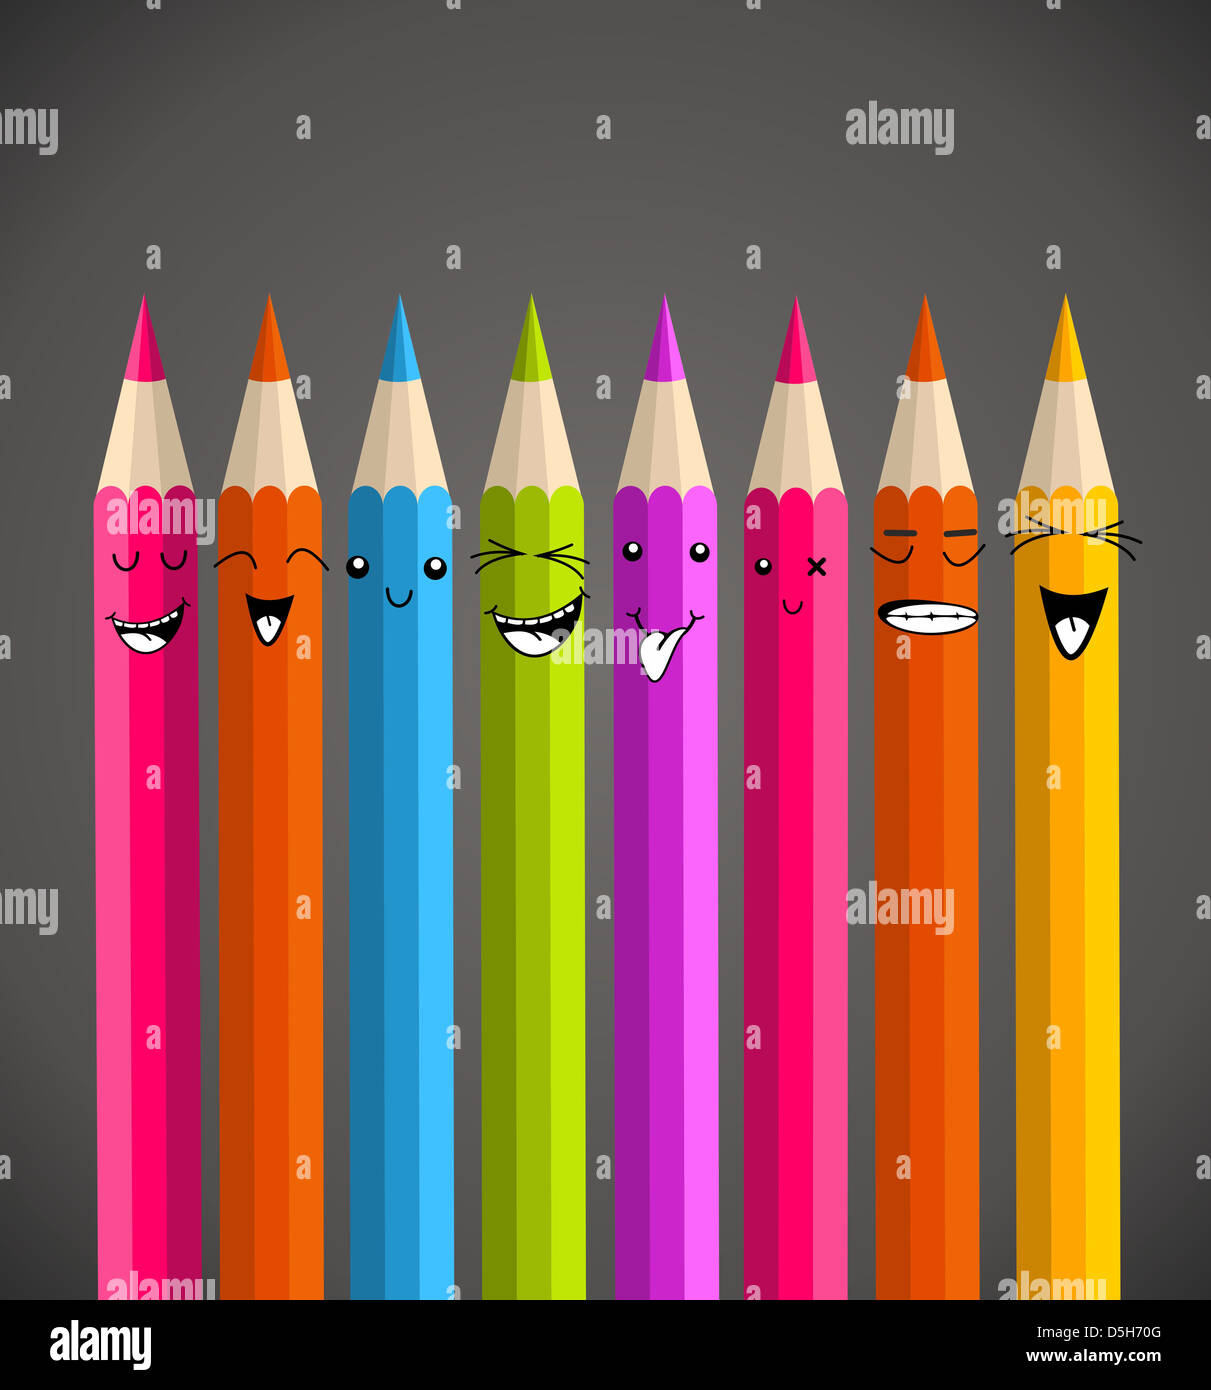 Regenbogenfarbenen Bleistift, glückliches Gesicht Cartoon. Vektor-Illustration für einfache Handhabung und individuelle Färbung geschichtet. Stockfoto